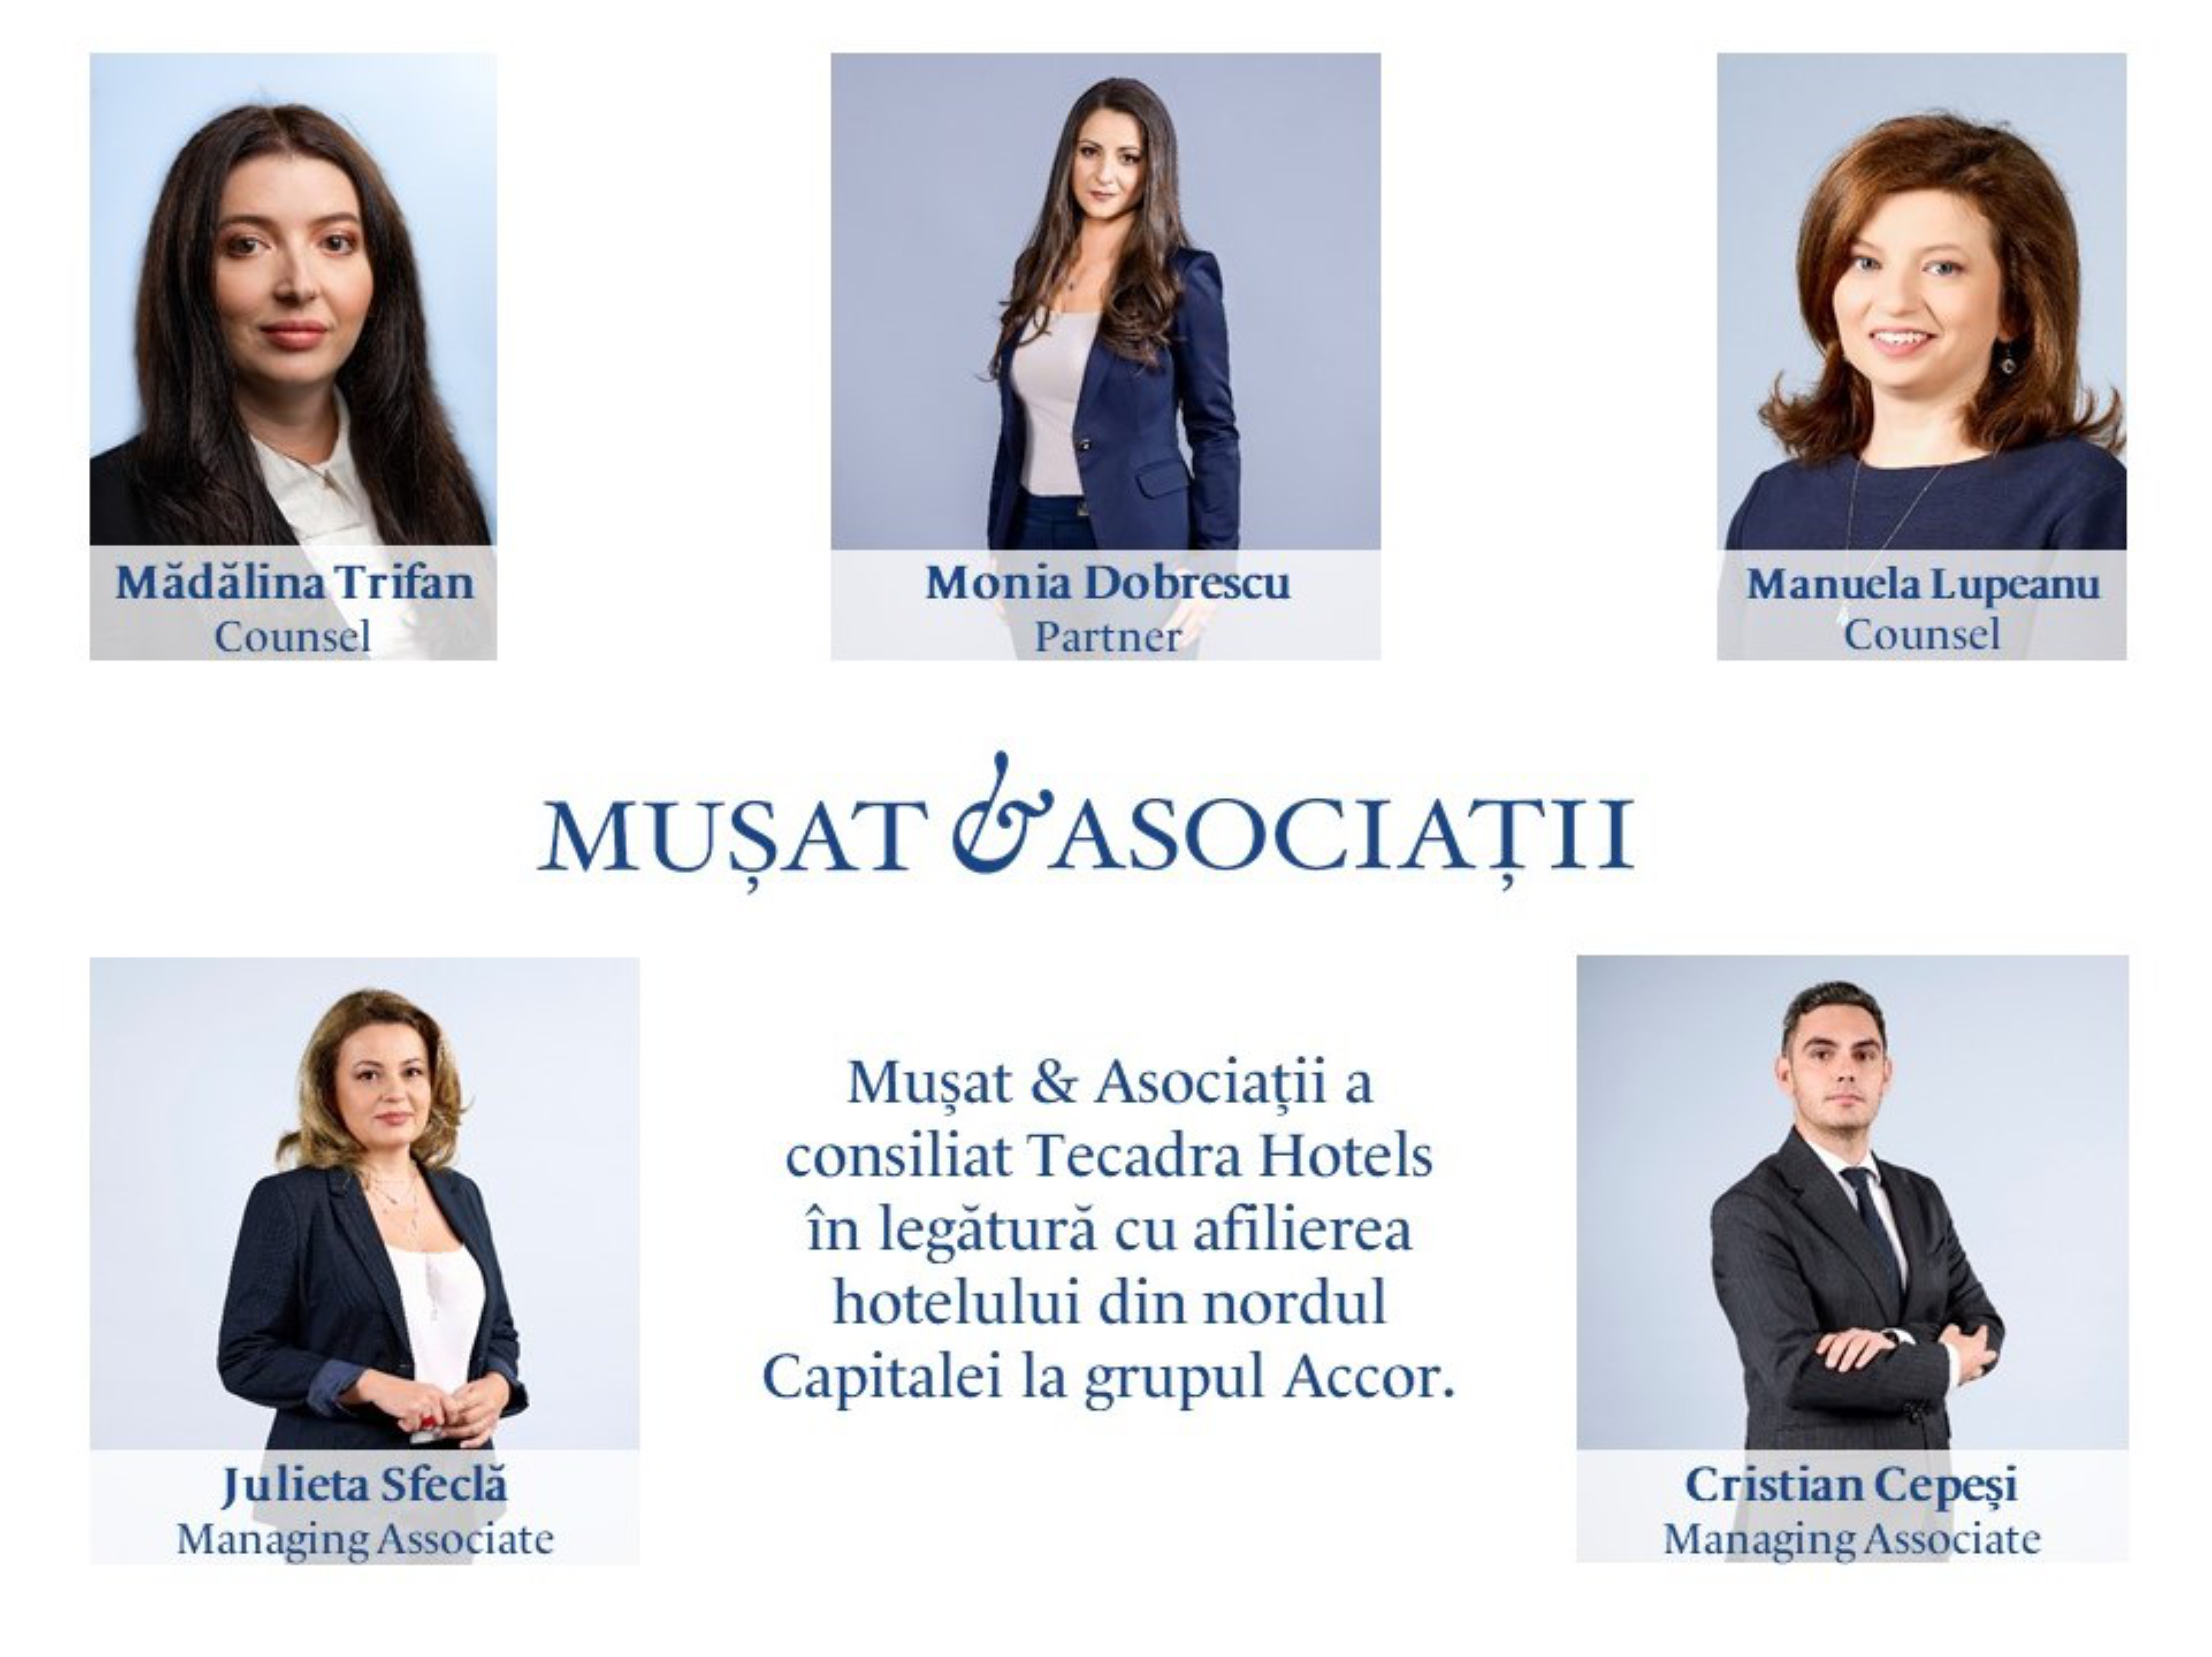 Mușat & Asociații a consiliat Tecadra Hotels în legătură cu afilierea hotelului din nordul Capitalei la grupul Accor